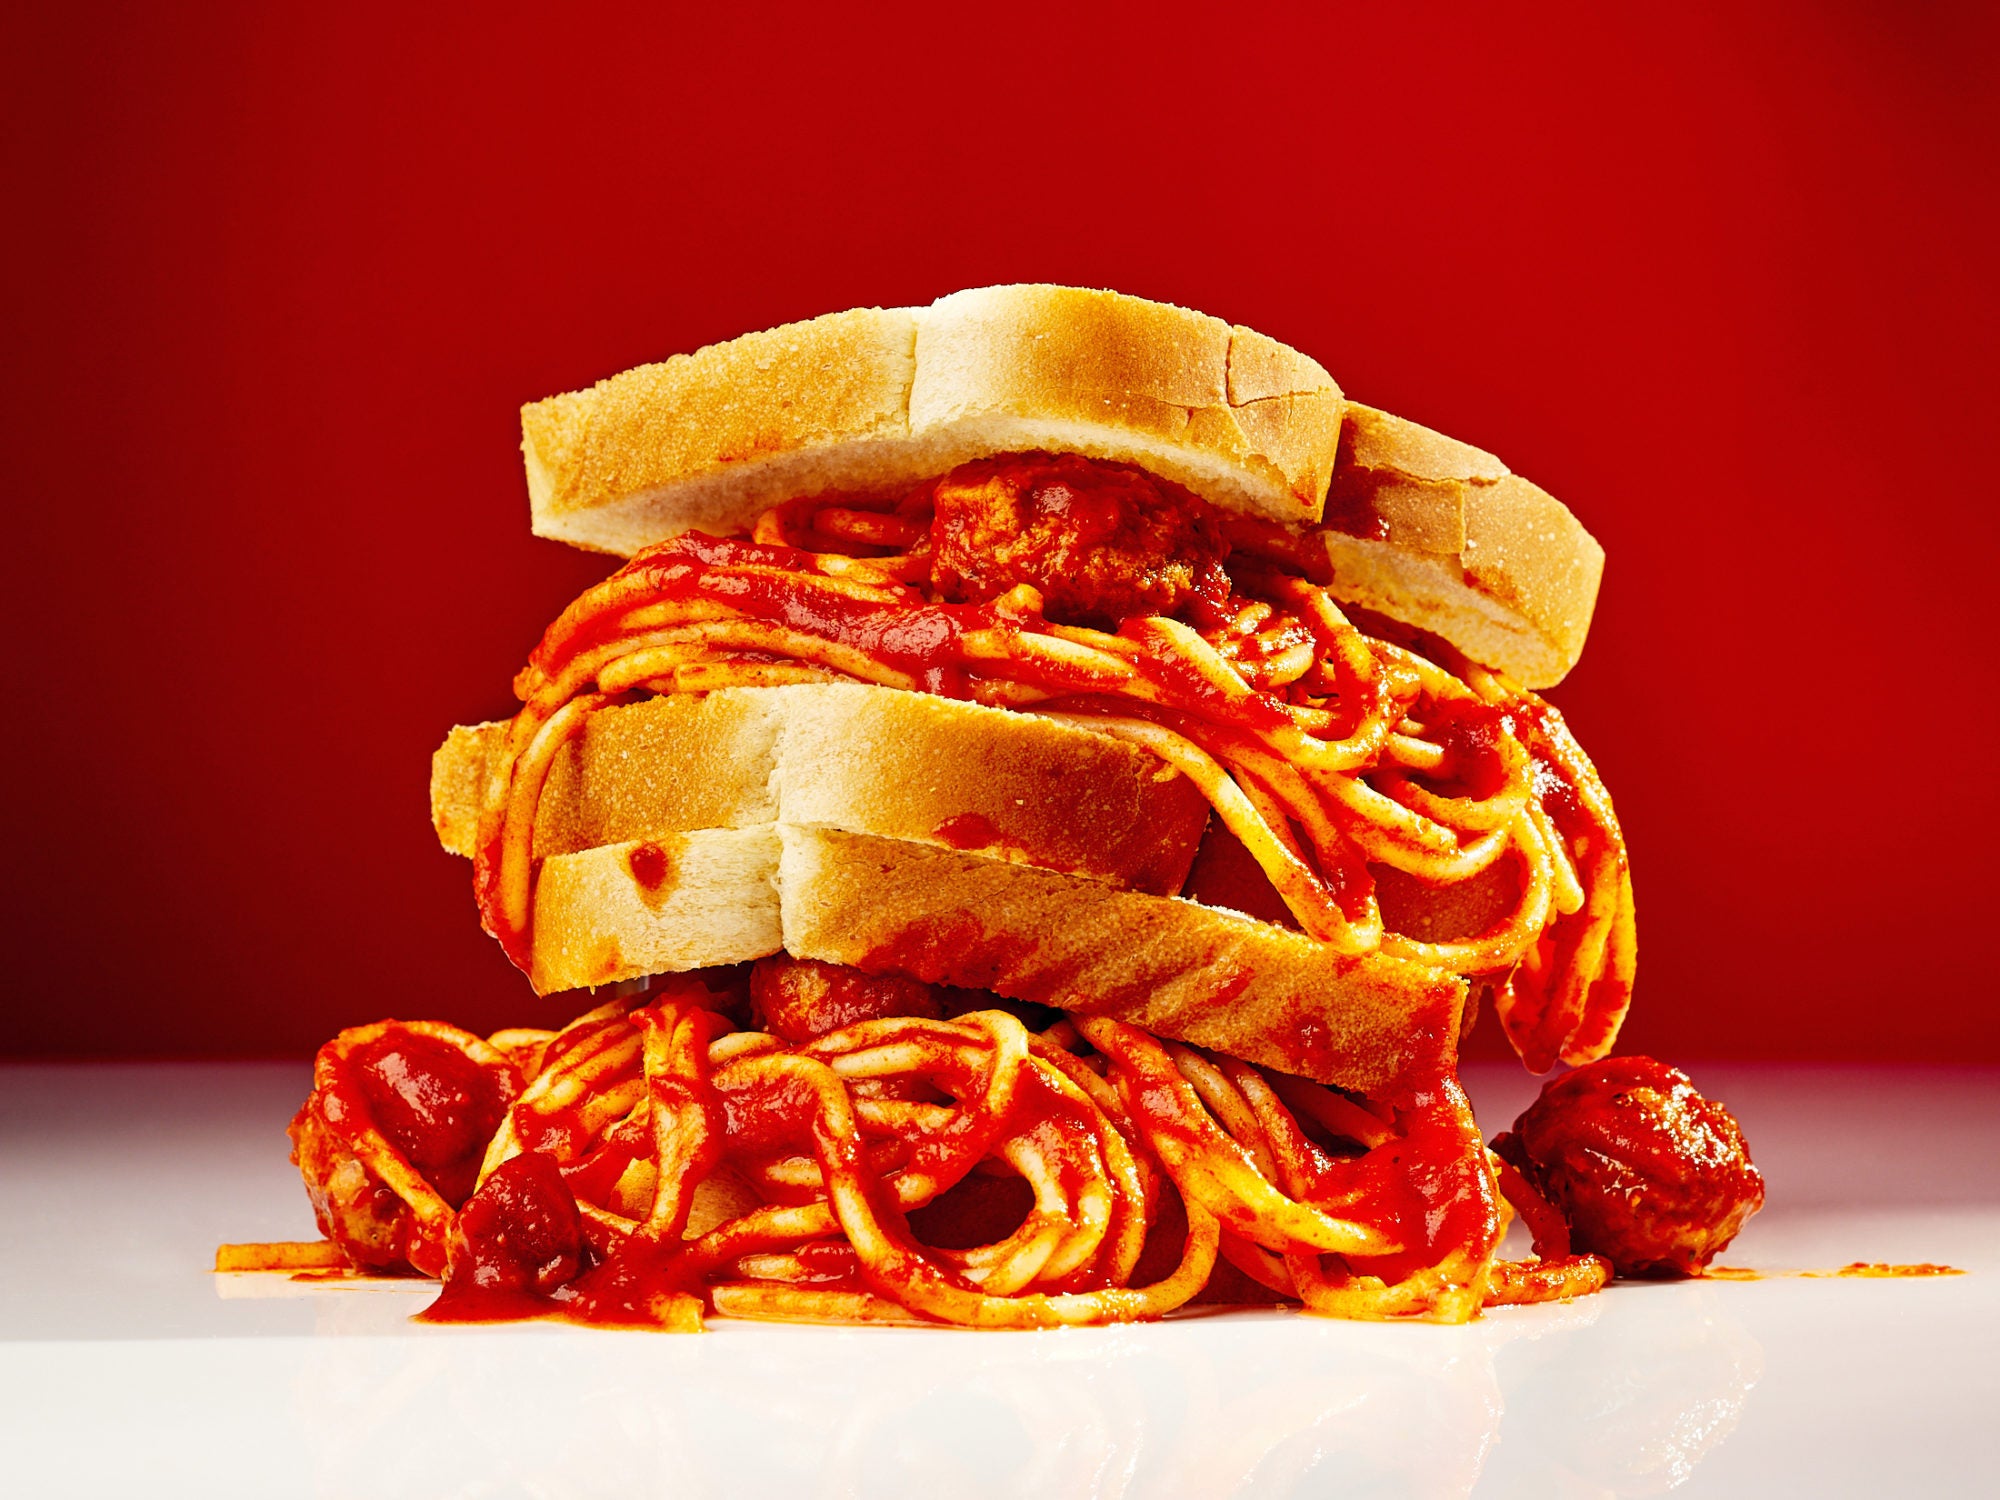 2019_04_06_Taste_Spagetti_Sandwich196